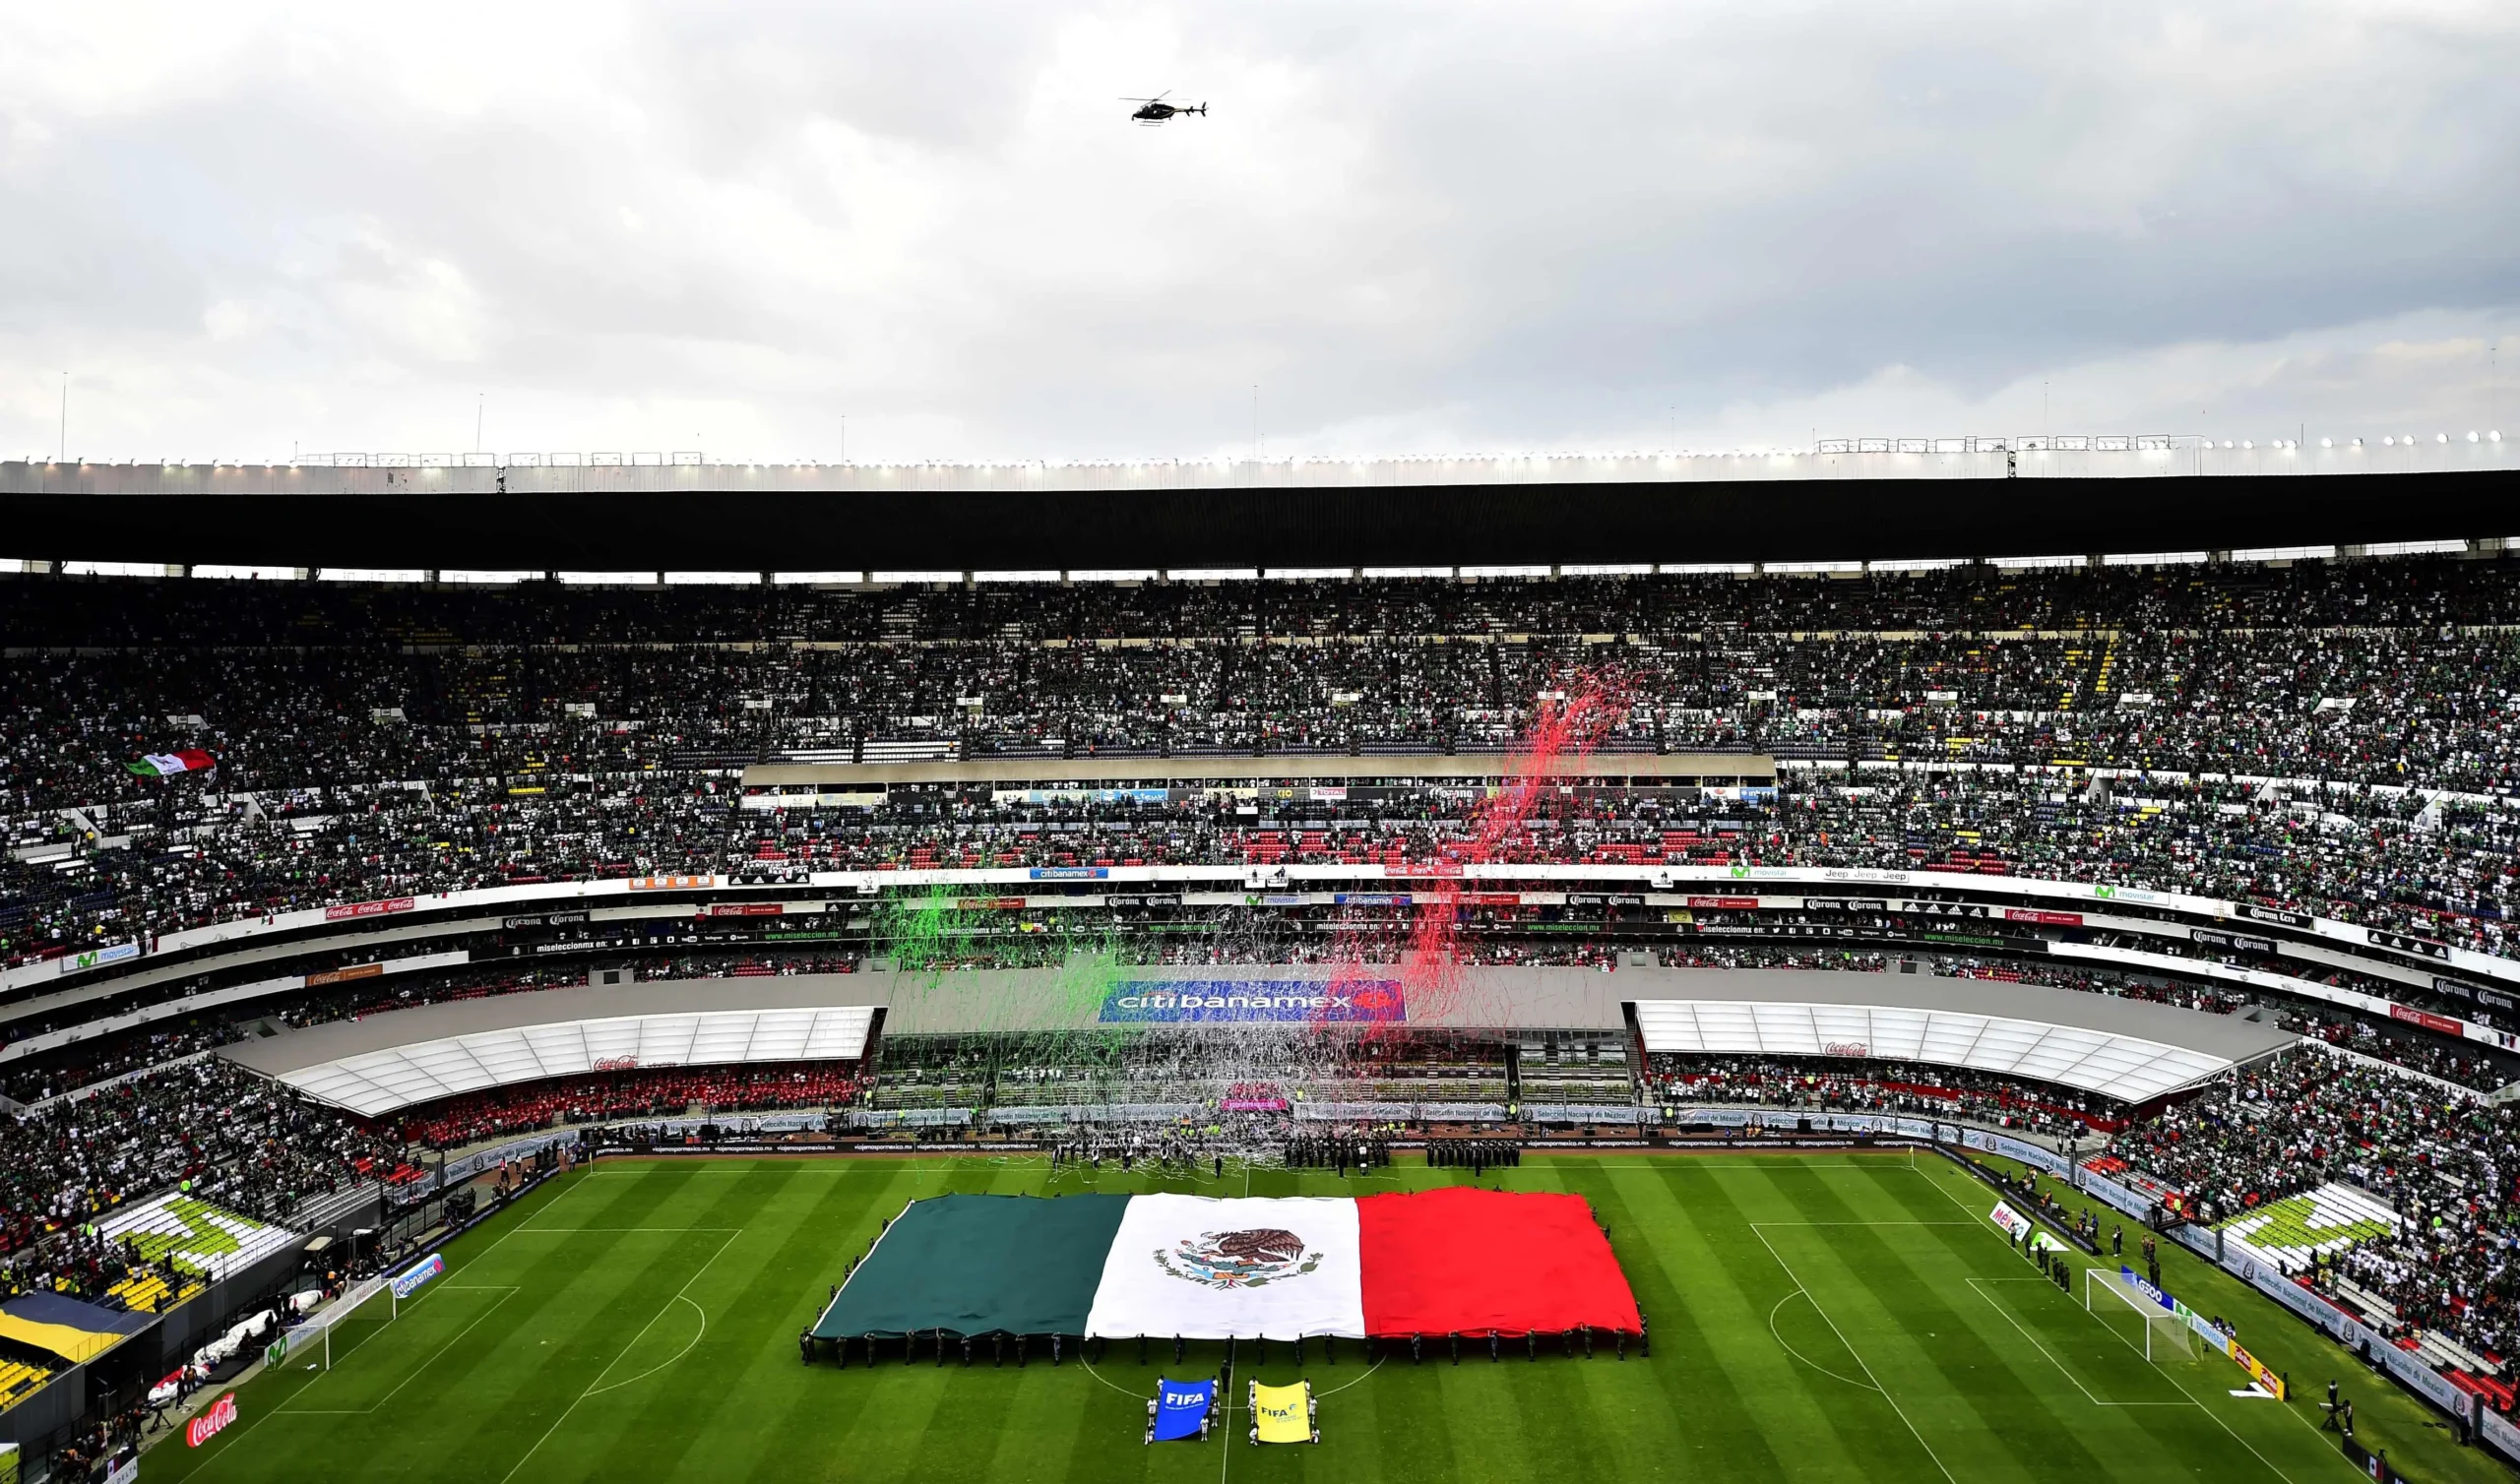 quien juega mañana en el estadio azteca - Qué días está abierto el Estadio Azteca